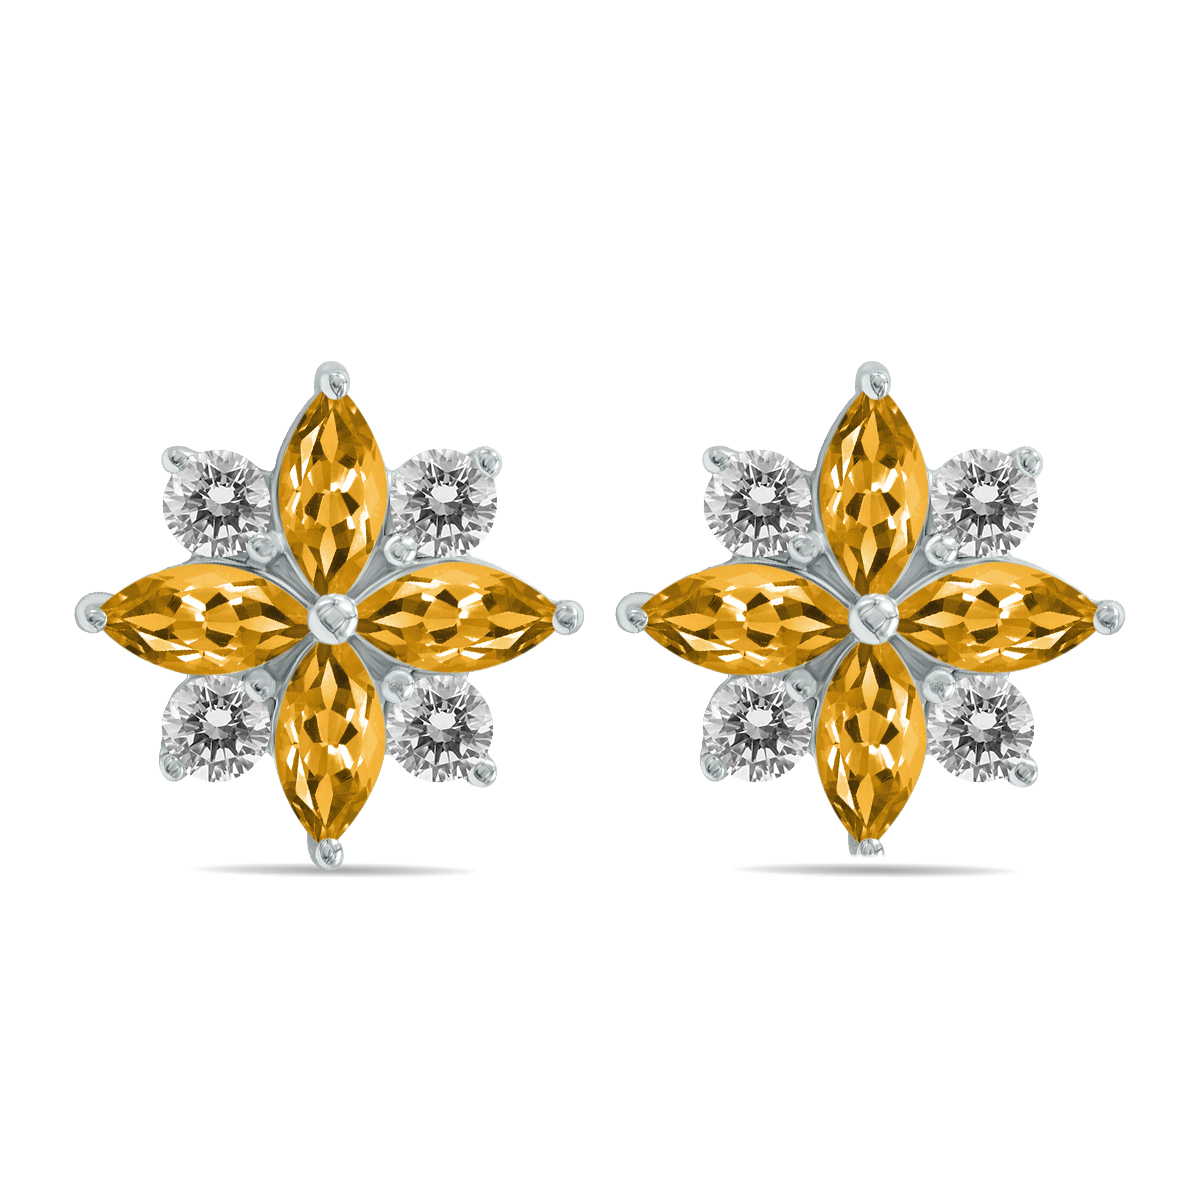 Image of 1 Carat TW Blue Topaz and Diamond Flower Earrings in 10K White Gold